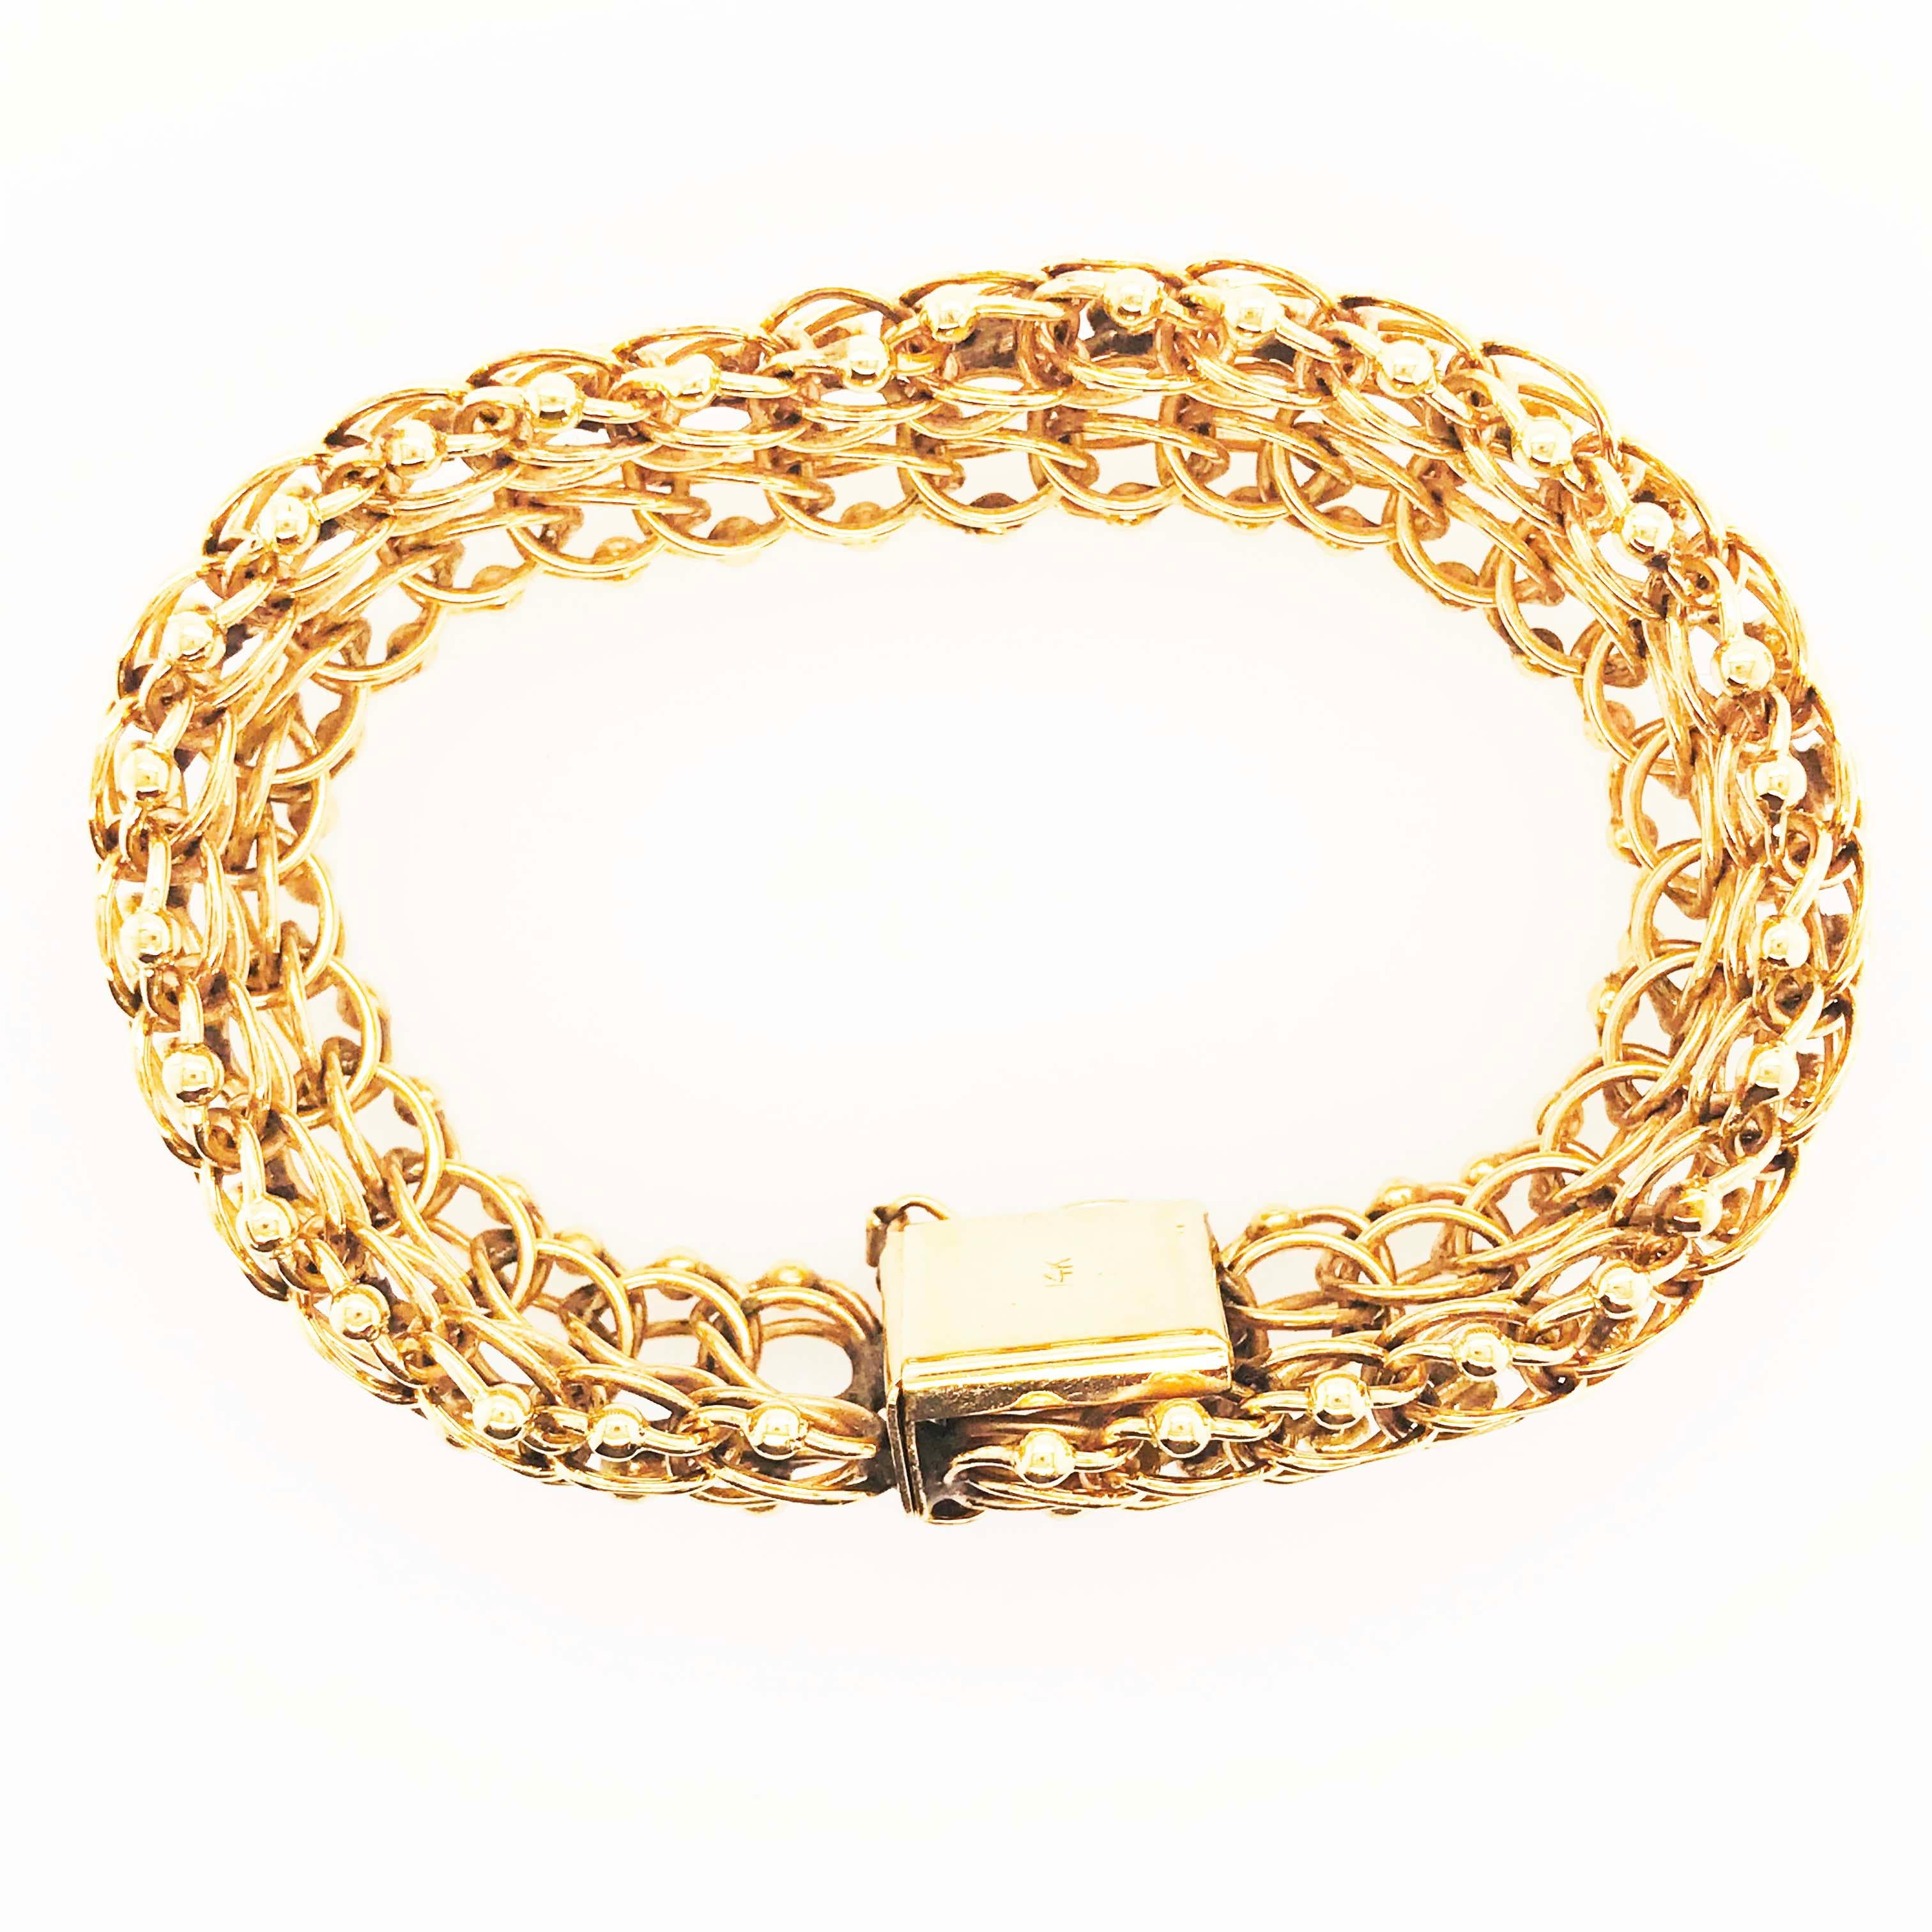 Women's or Men's Large Gold Charm Bracelet, Bracelet with Custom Links in 14 Karat Gold